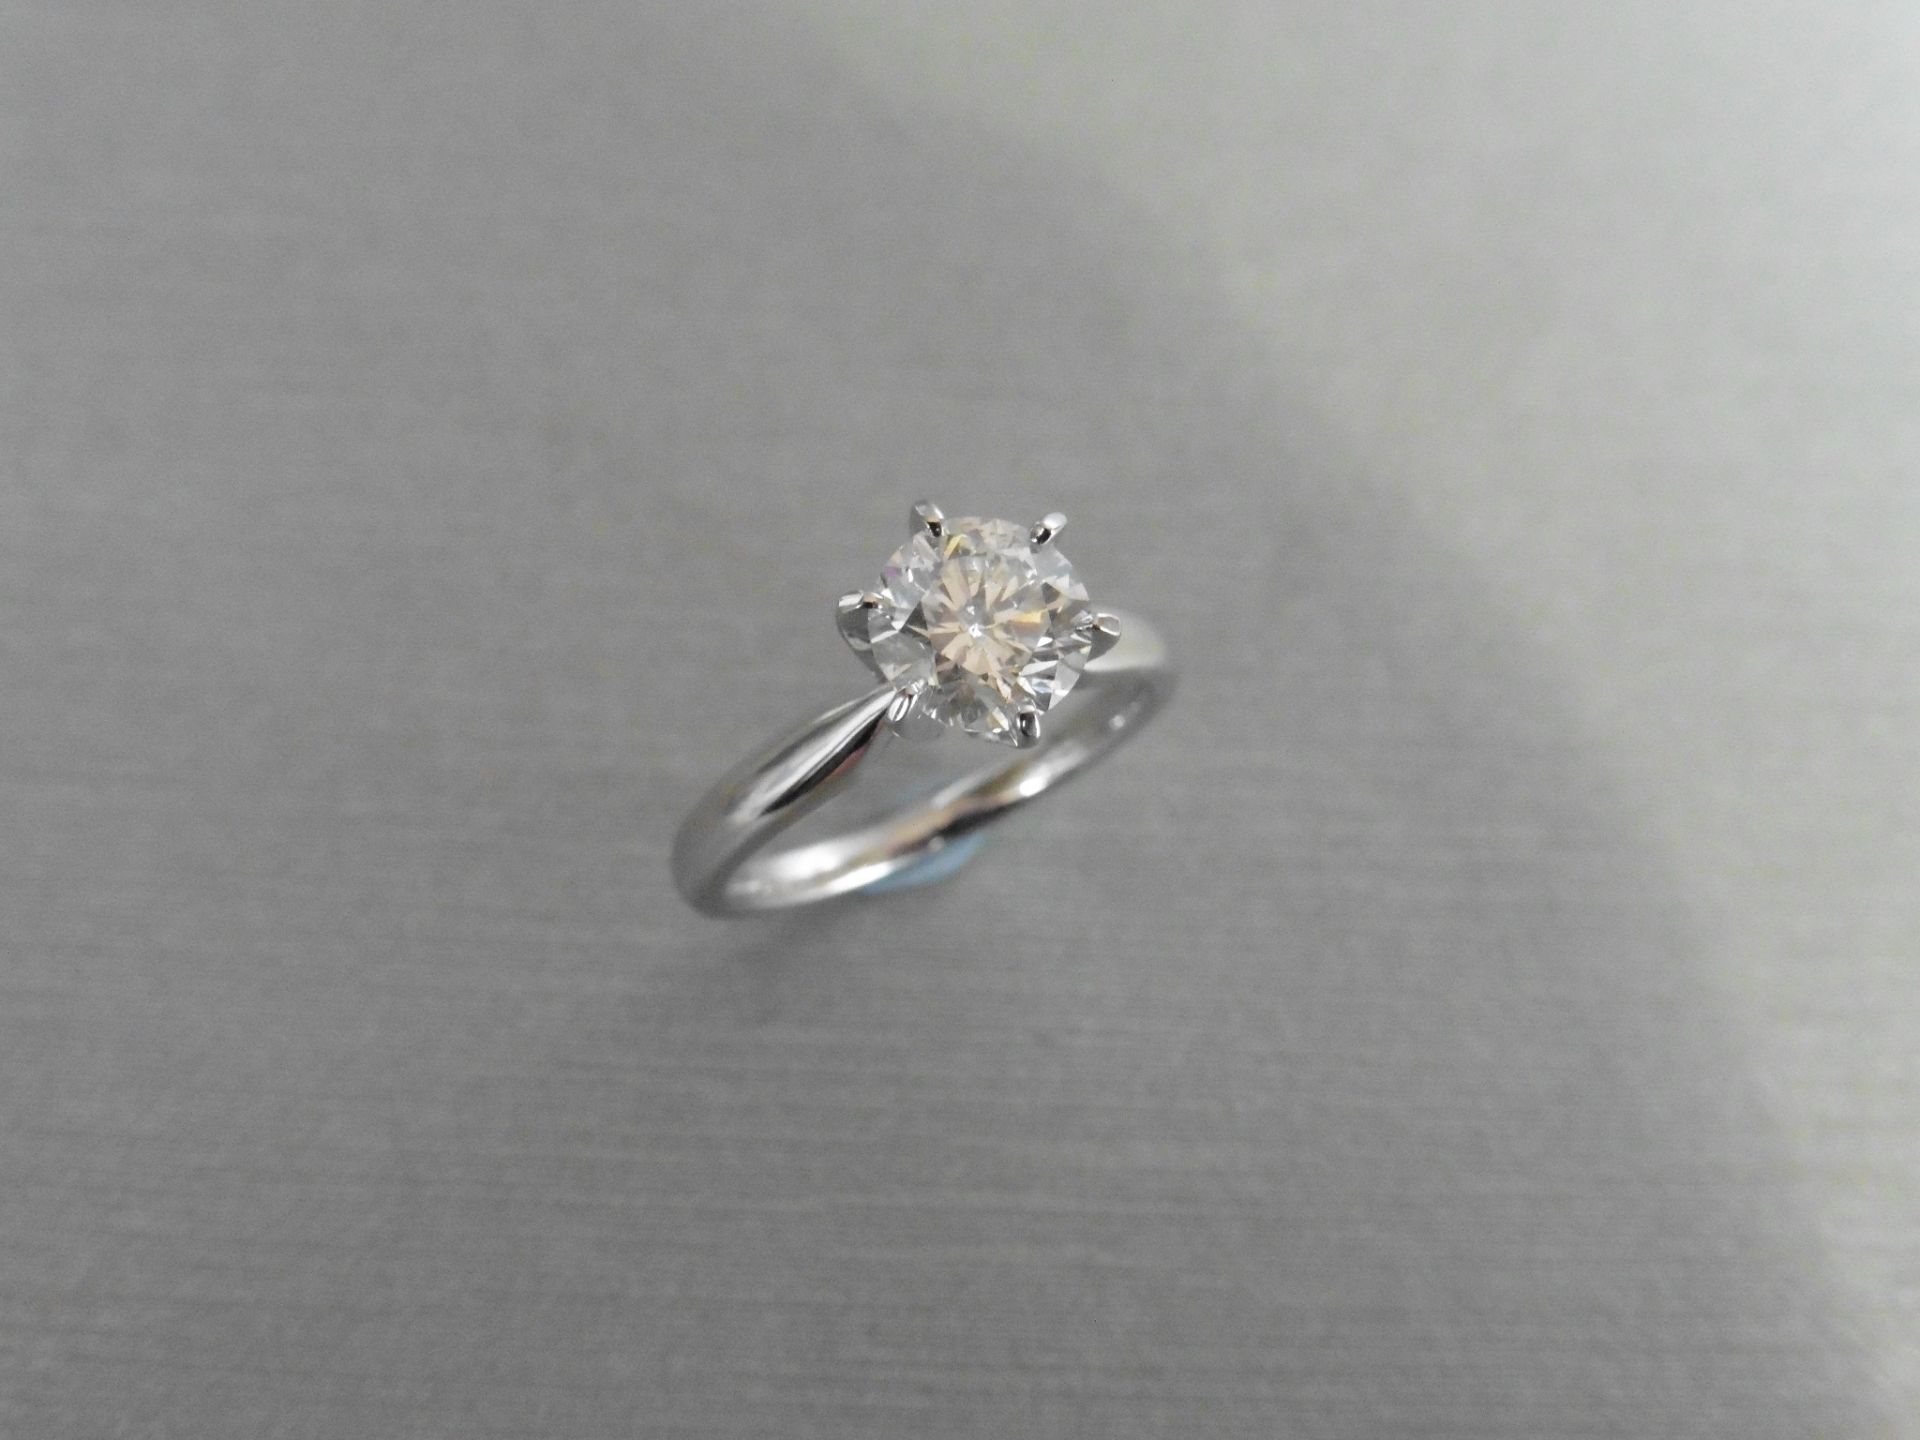 1.00ct diamond solitaire ring. Brilliant cut diamond, I colour, si2 clarity.